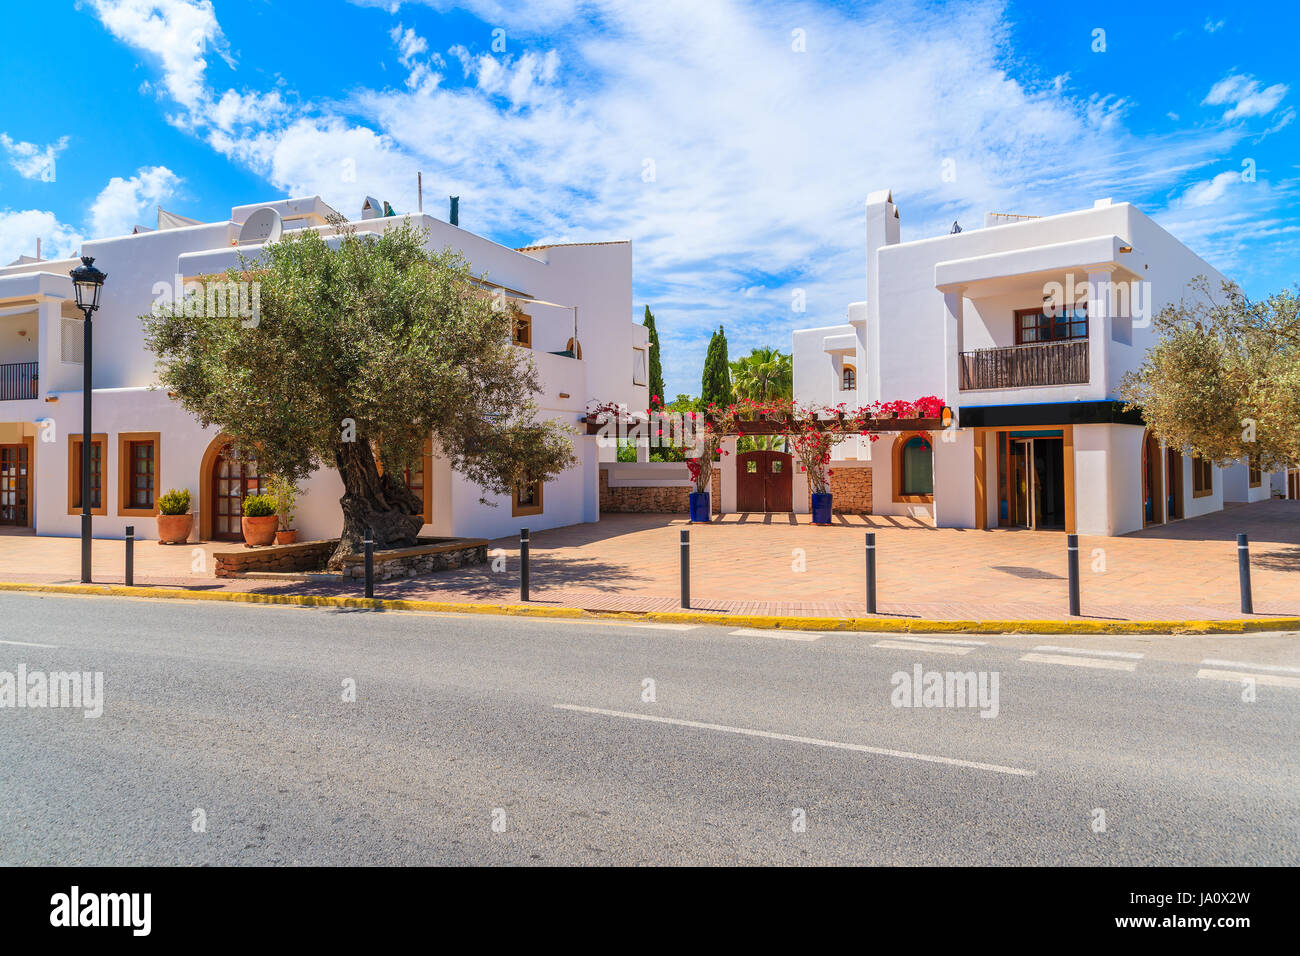 Straße mit typischen Architektur von Sant Carles de Peralta Dorf mit weiß getünchten Häusern, Insel Ibiza, Spanien Stockfoto